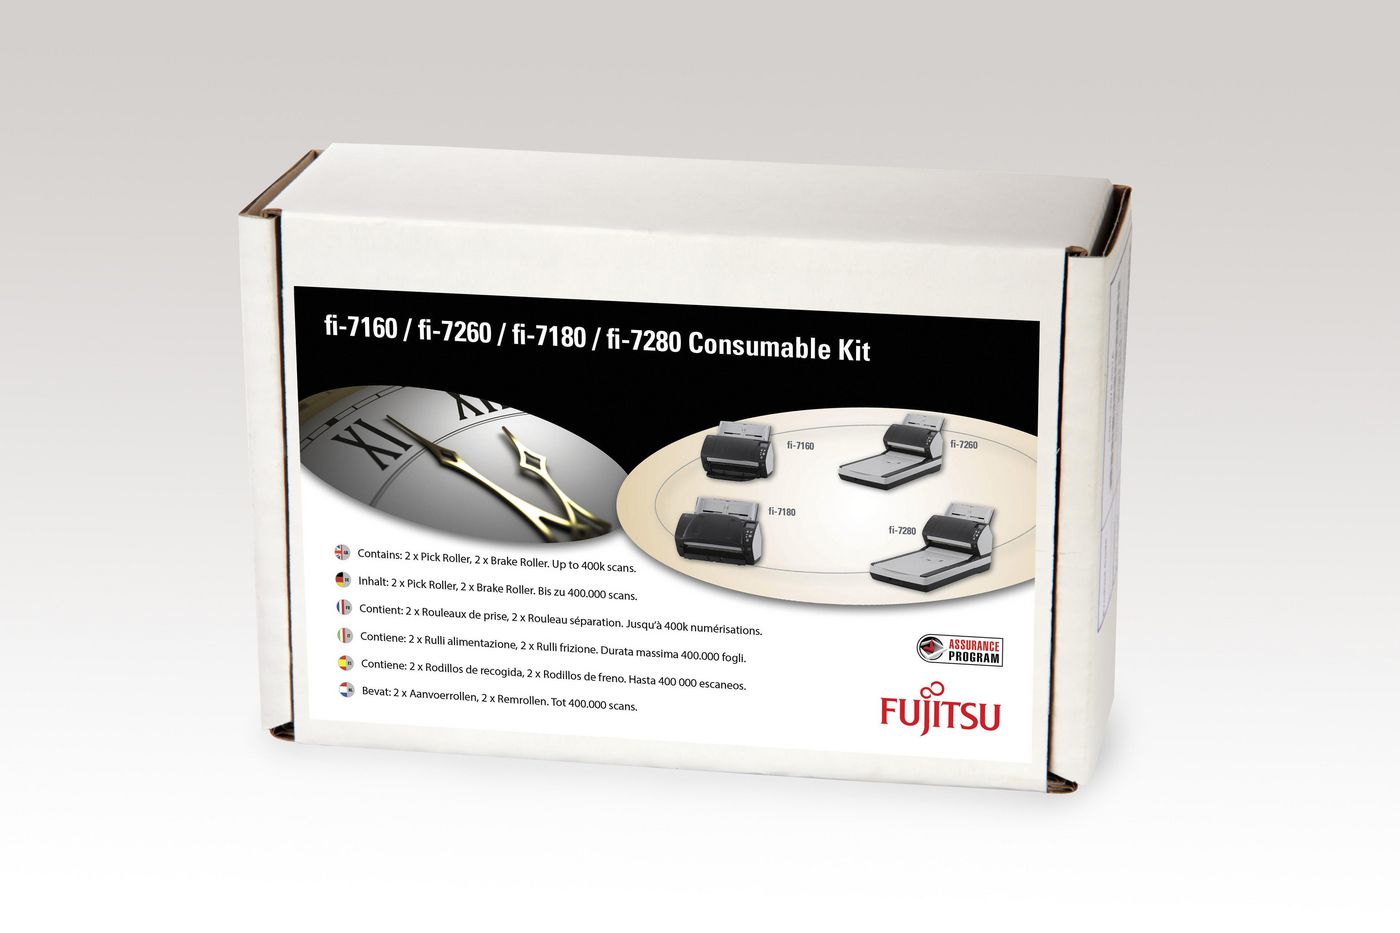 CON-3670-002A, Fujitsu Consumable Kits for fi-7140, fi-7240, fi 